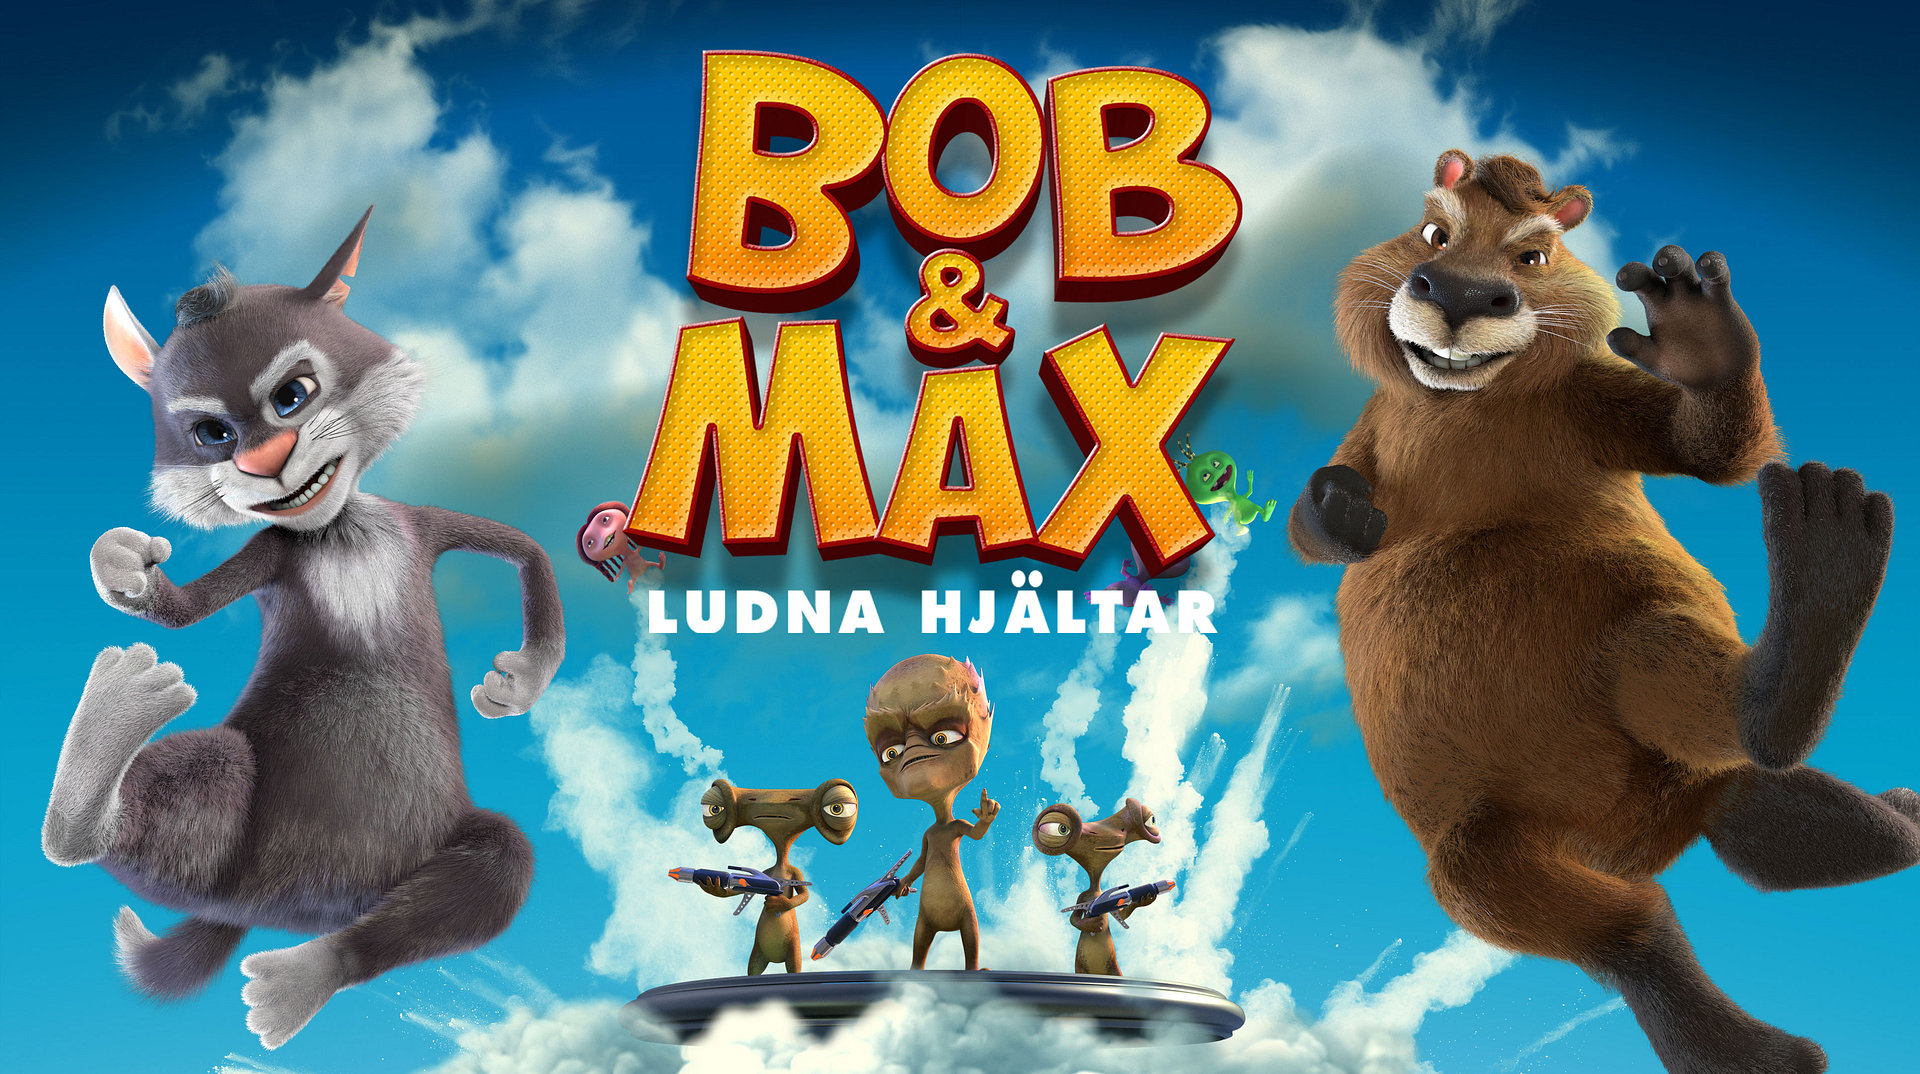 Bob & Max - Lodne helter